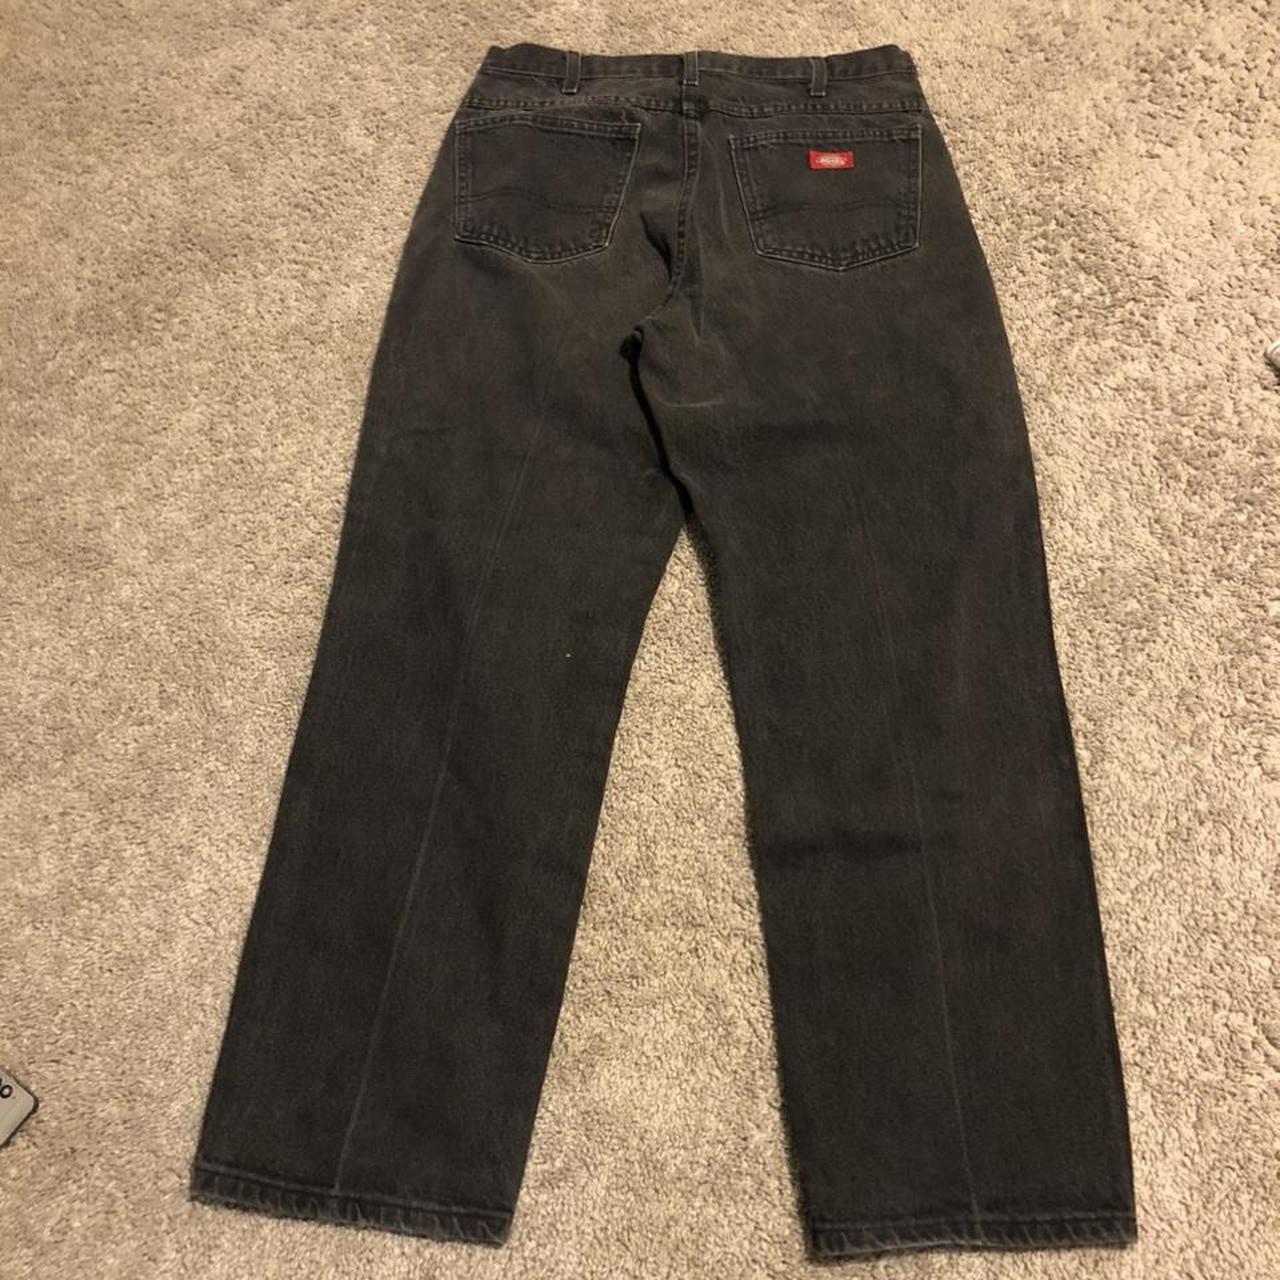 34 /32 black vintage dickie pants - Depop